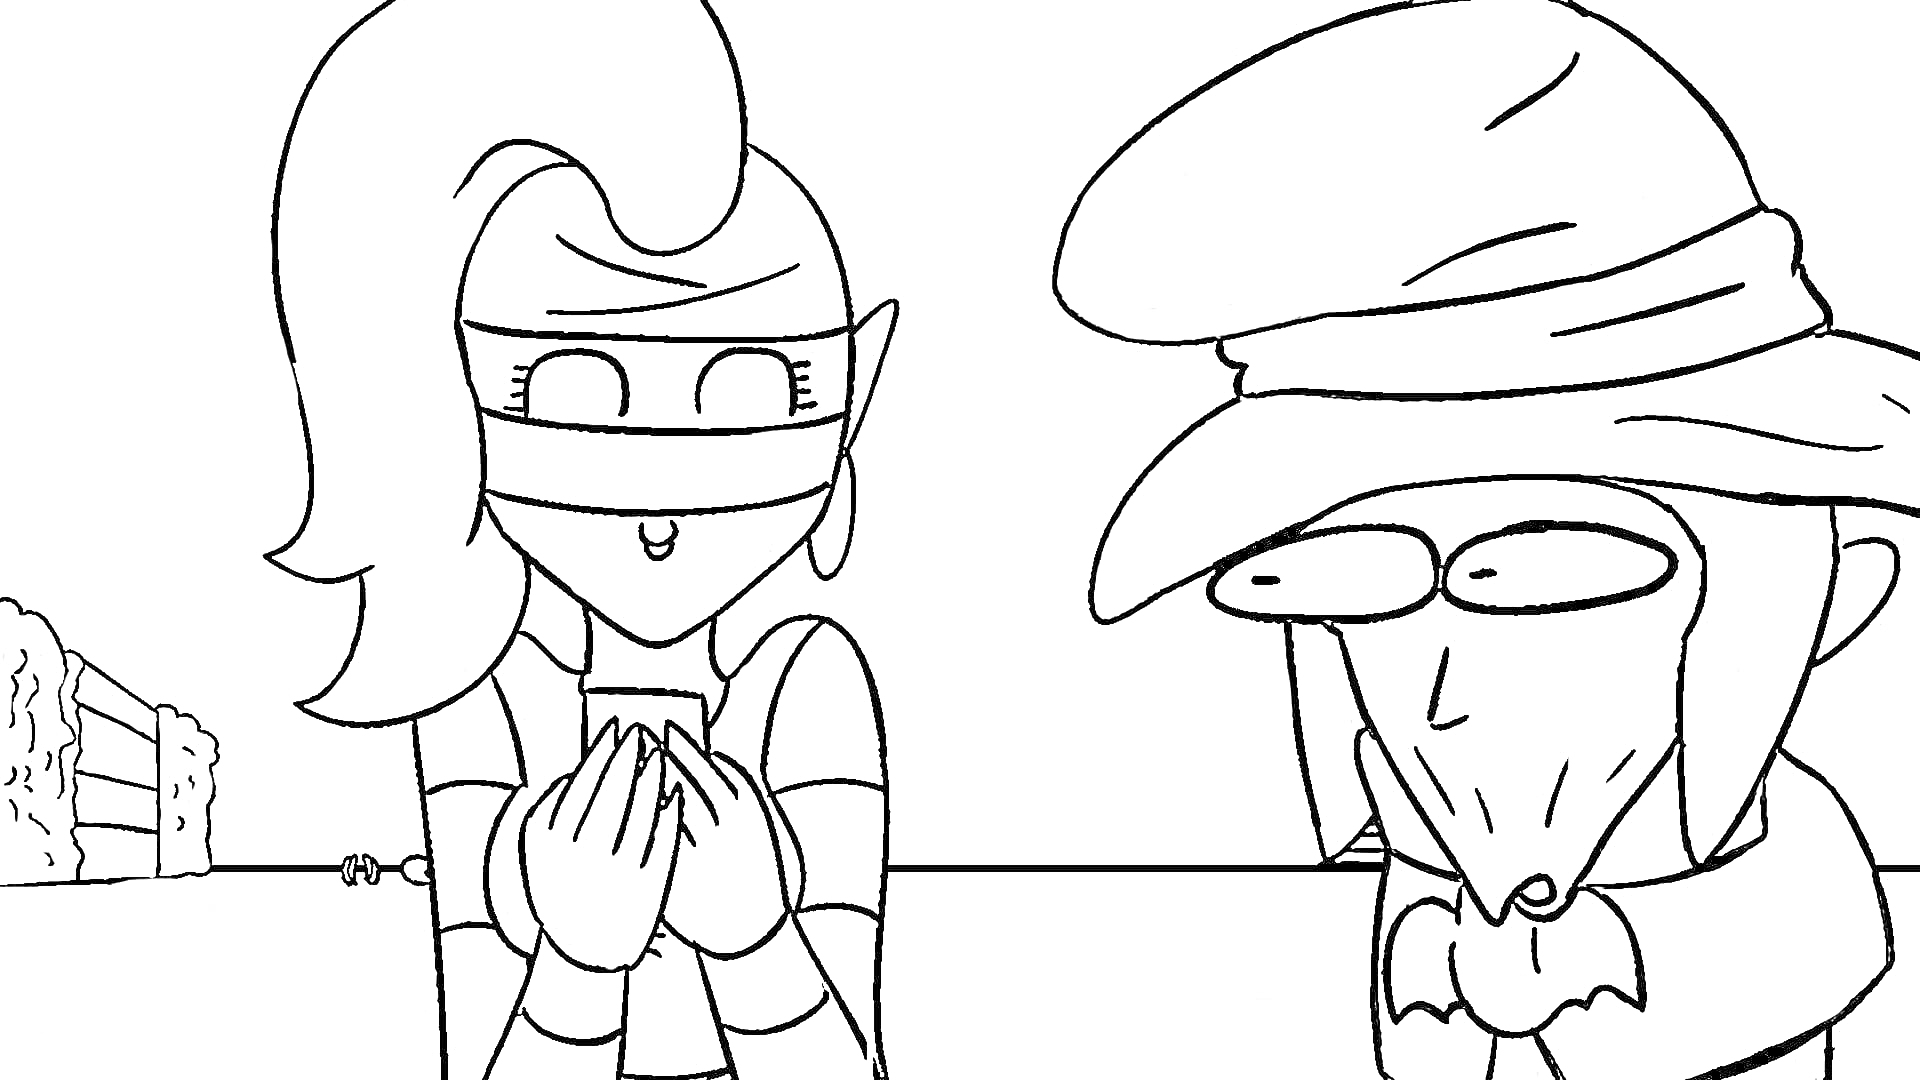 Два героя рисуют стратегию, один в маске и с большими волосами, другой в шляпе с петушиным гребнем